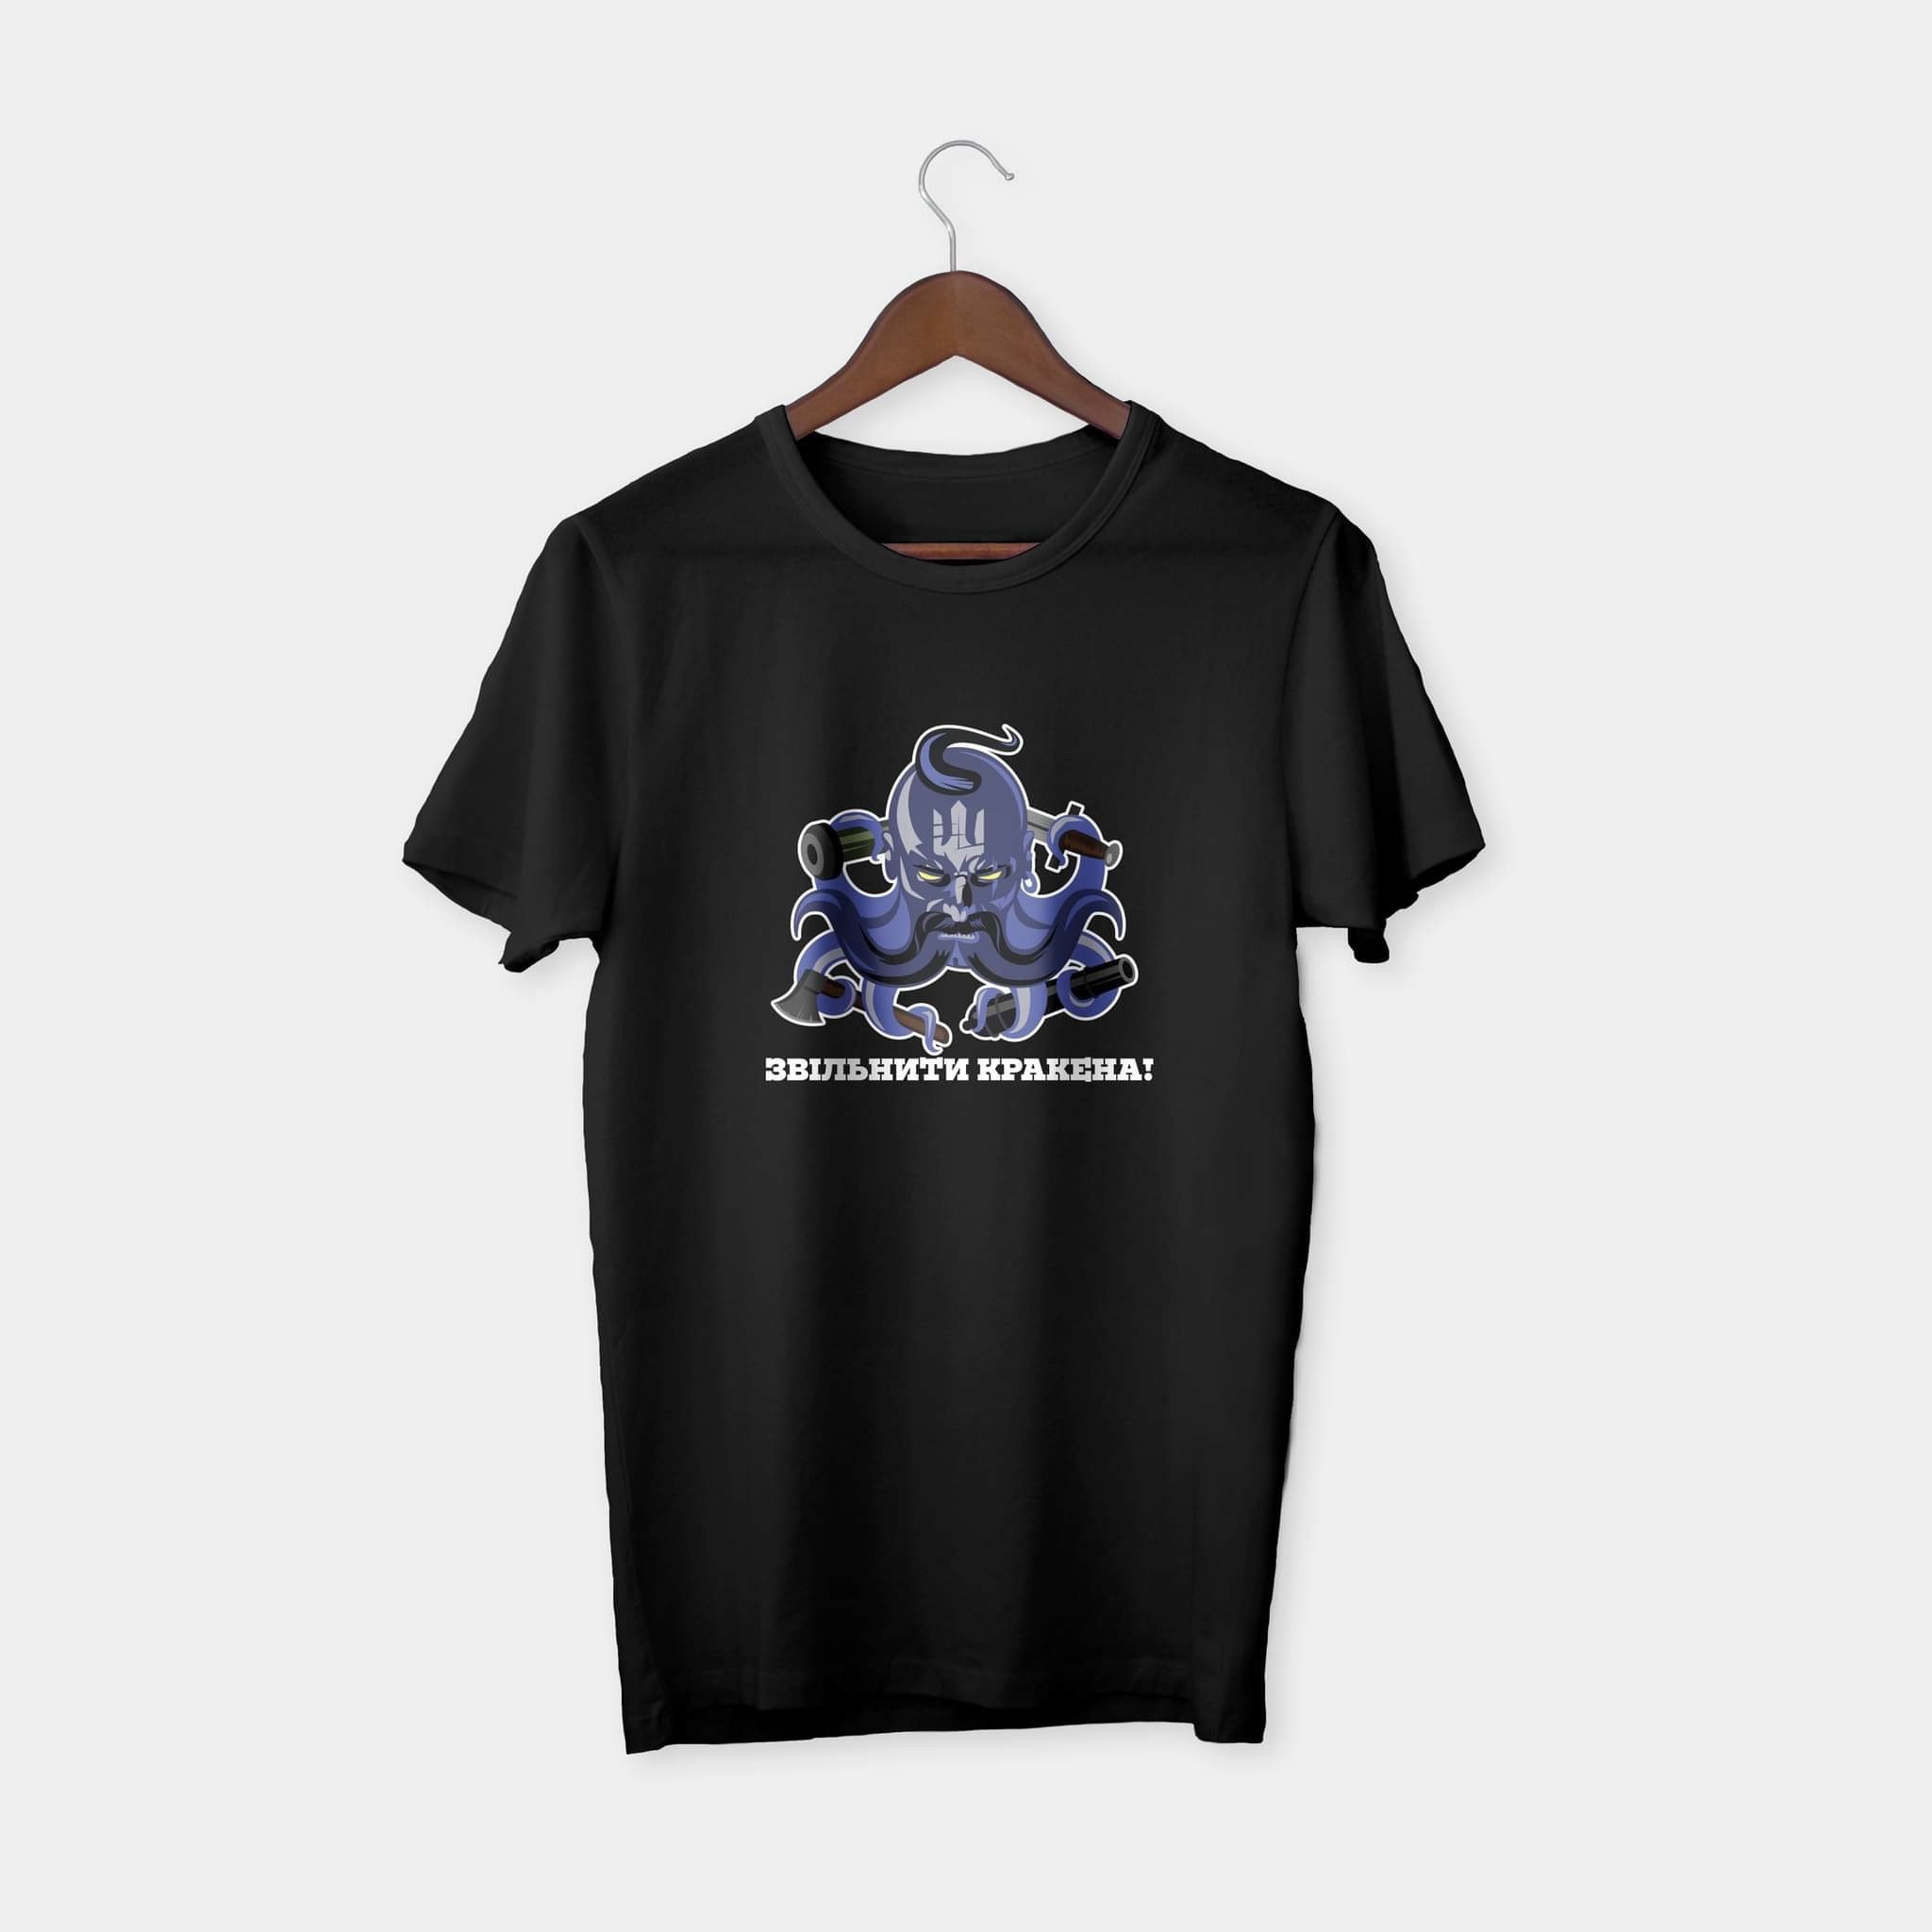 Release the kraken t-shirt